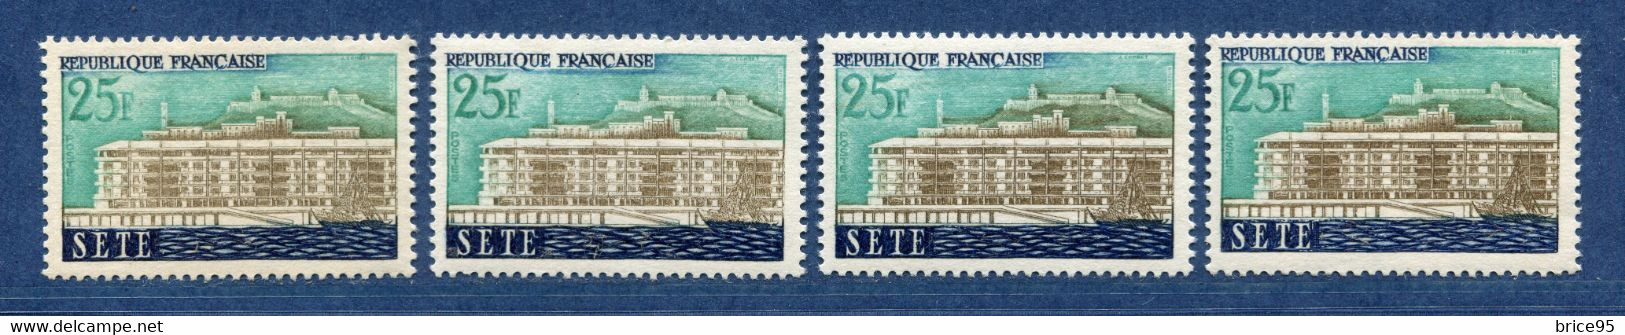 ⭐ France - Variété - YT N° 1155 - Couleurs - Pétouille - Neuf Sans Charnière - 1958 ⭐ - Ungebraucht